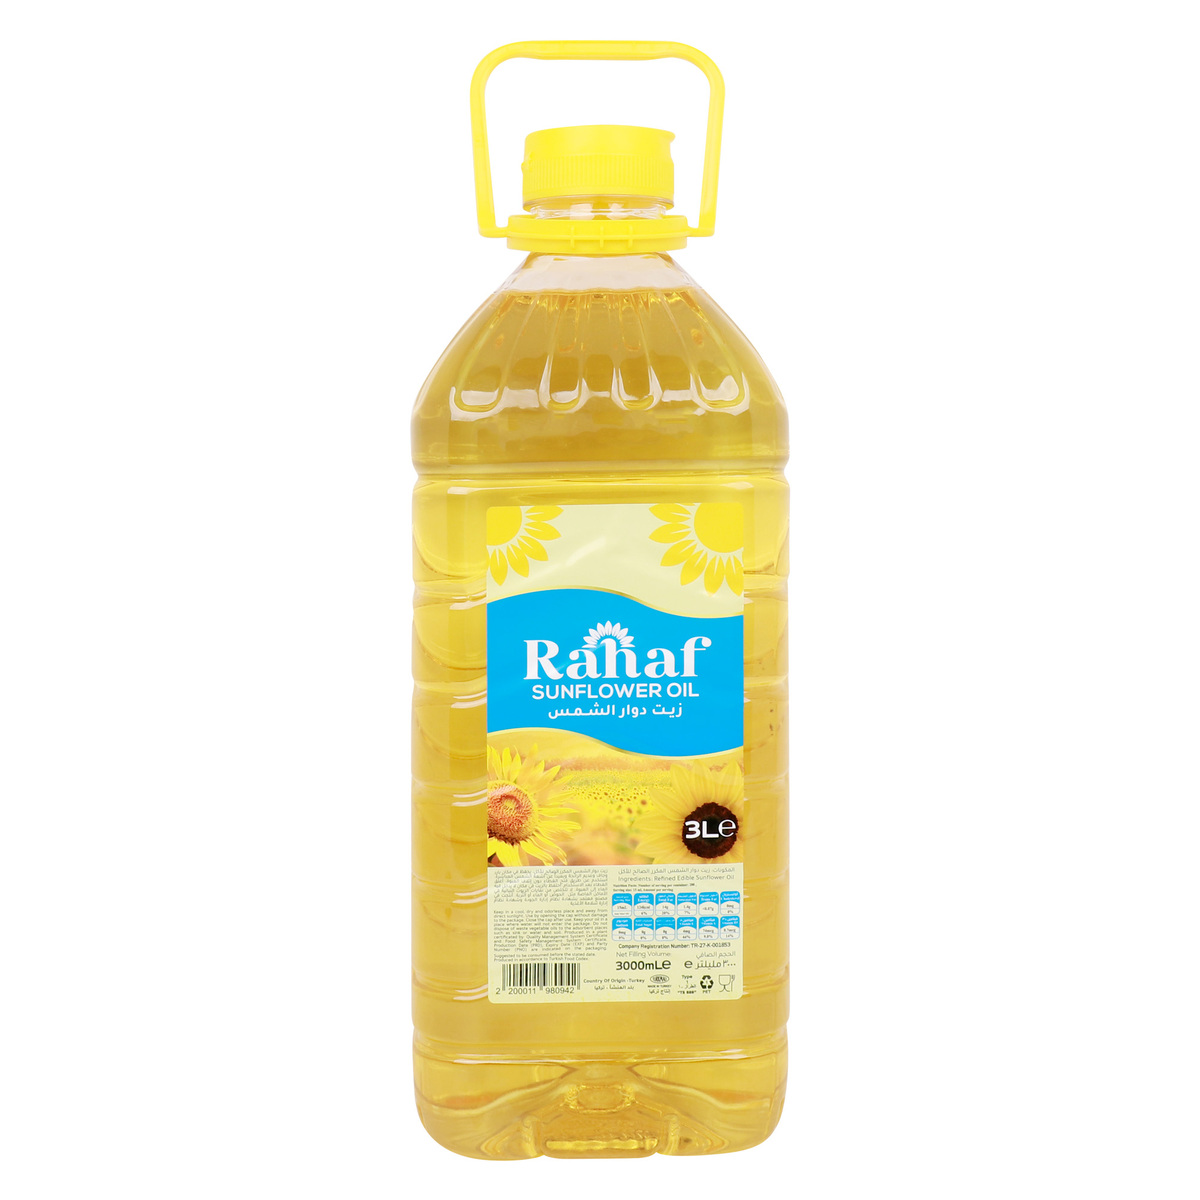 اشتري قم بشراء رهف زيت دوار الشمس 3 لتر Online at Best Price من الموقع - من لولو هايبر ماركت Sunflower Oil في الامارات